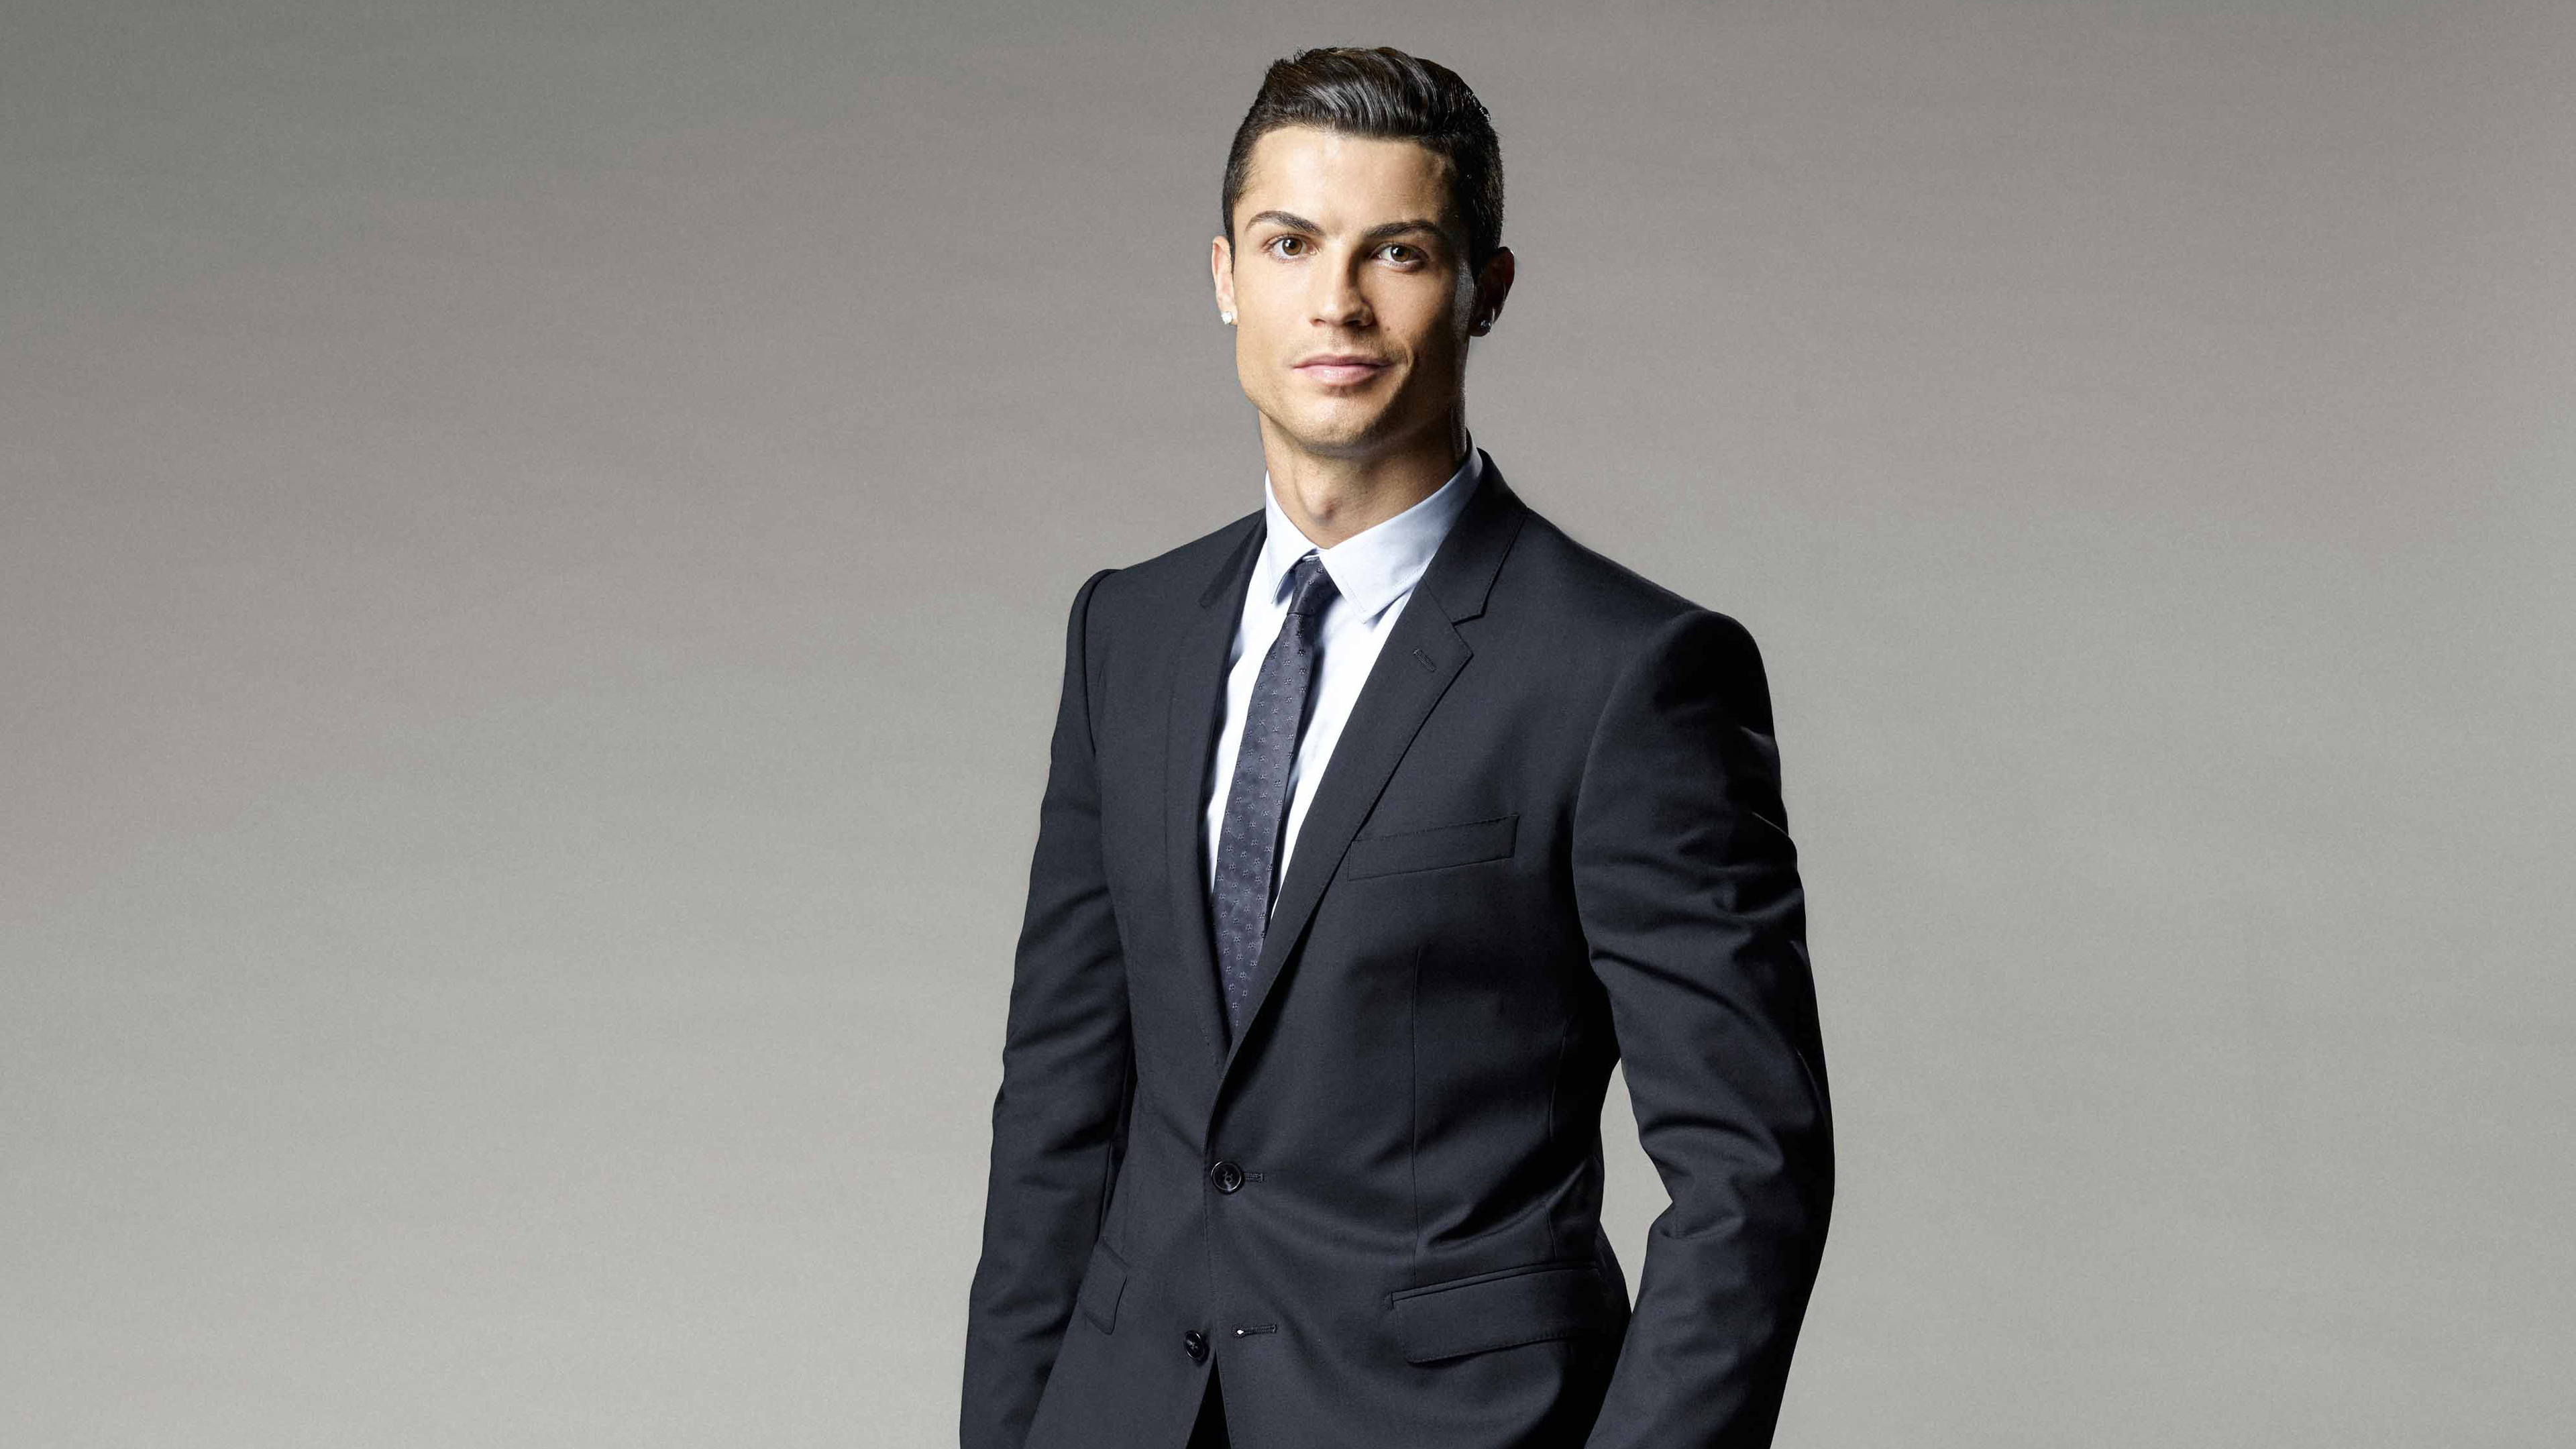 Cristiano Ronaldo 2019 4k - Cristiano Ronaldo Wallpaper Hd In Suit - HD Wallpaper 